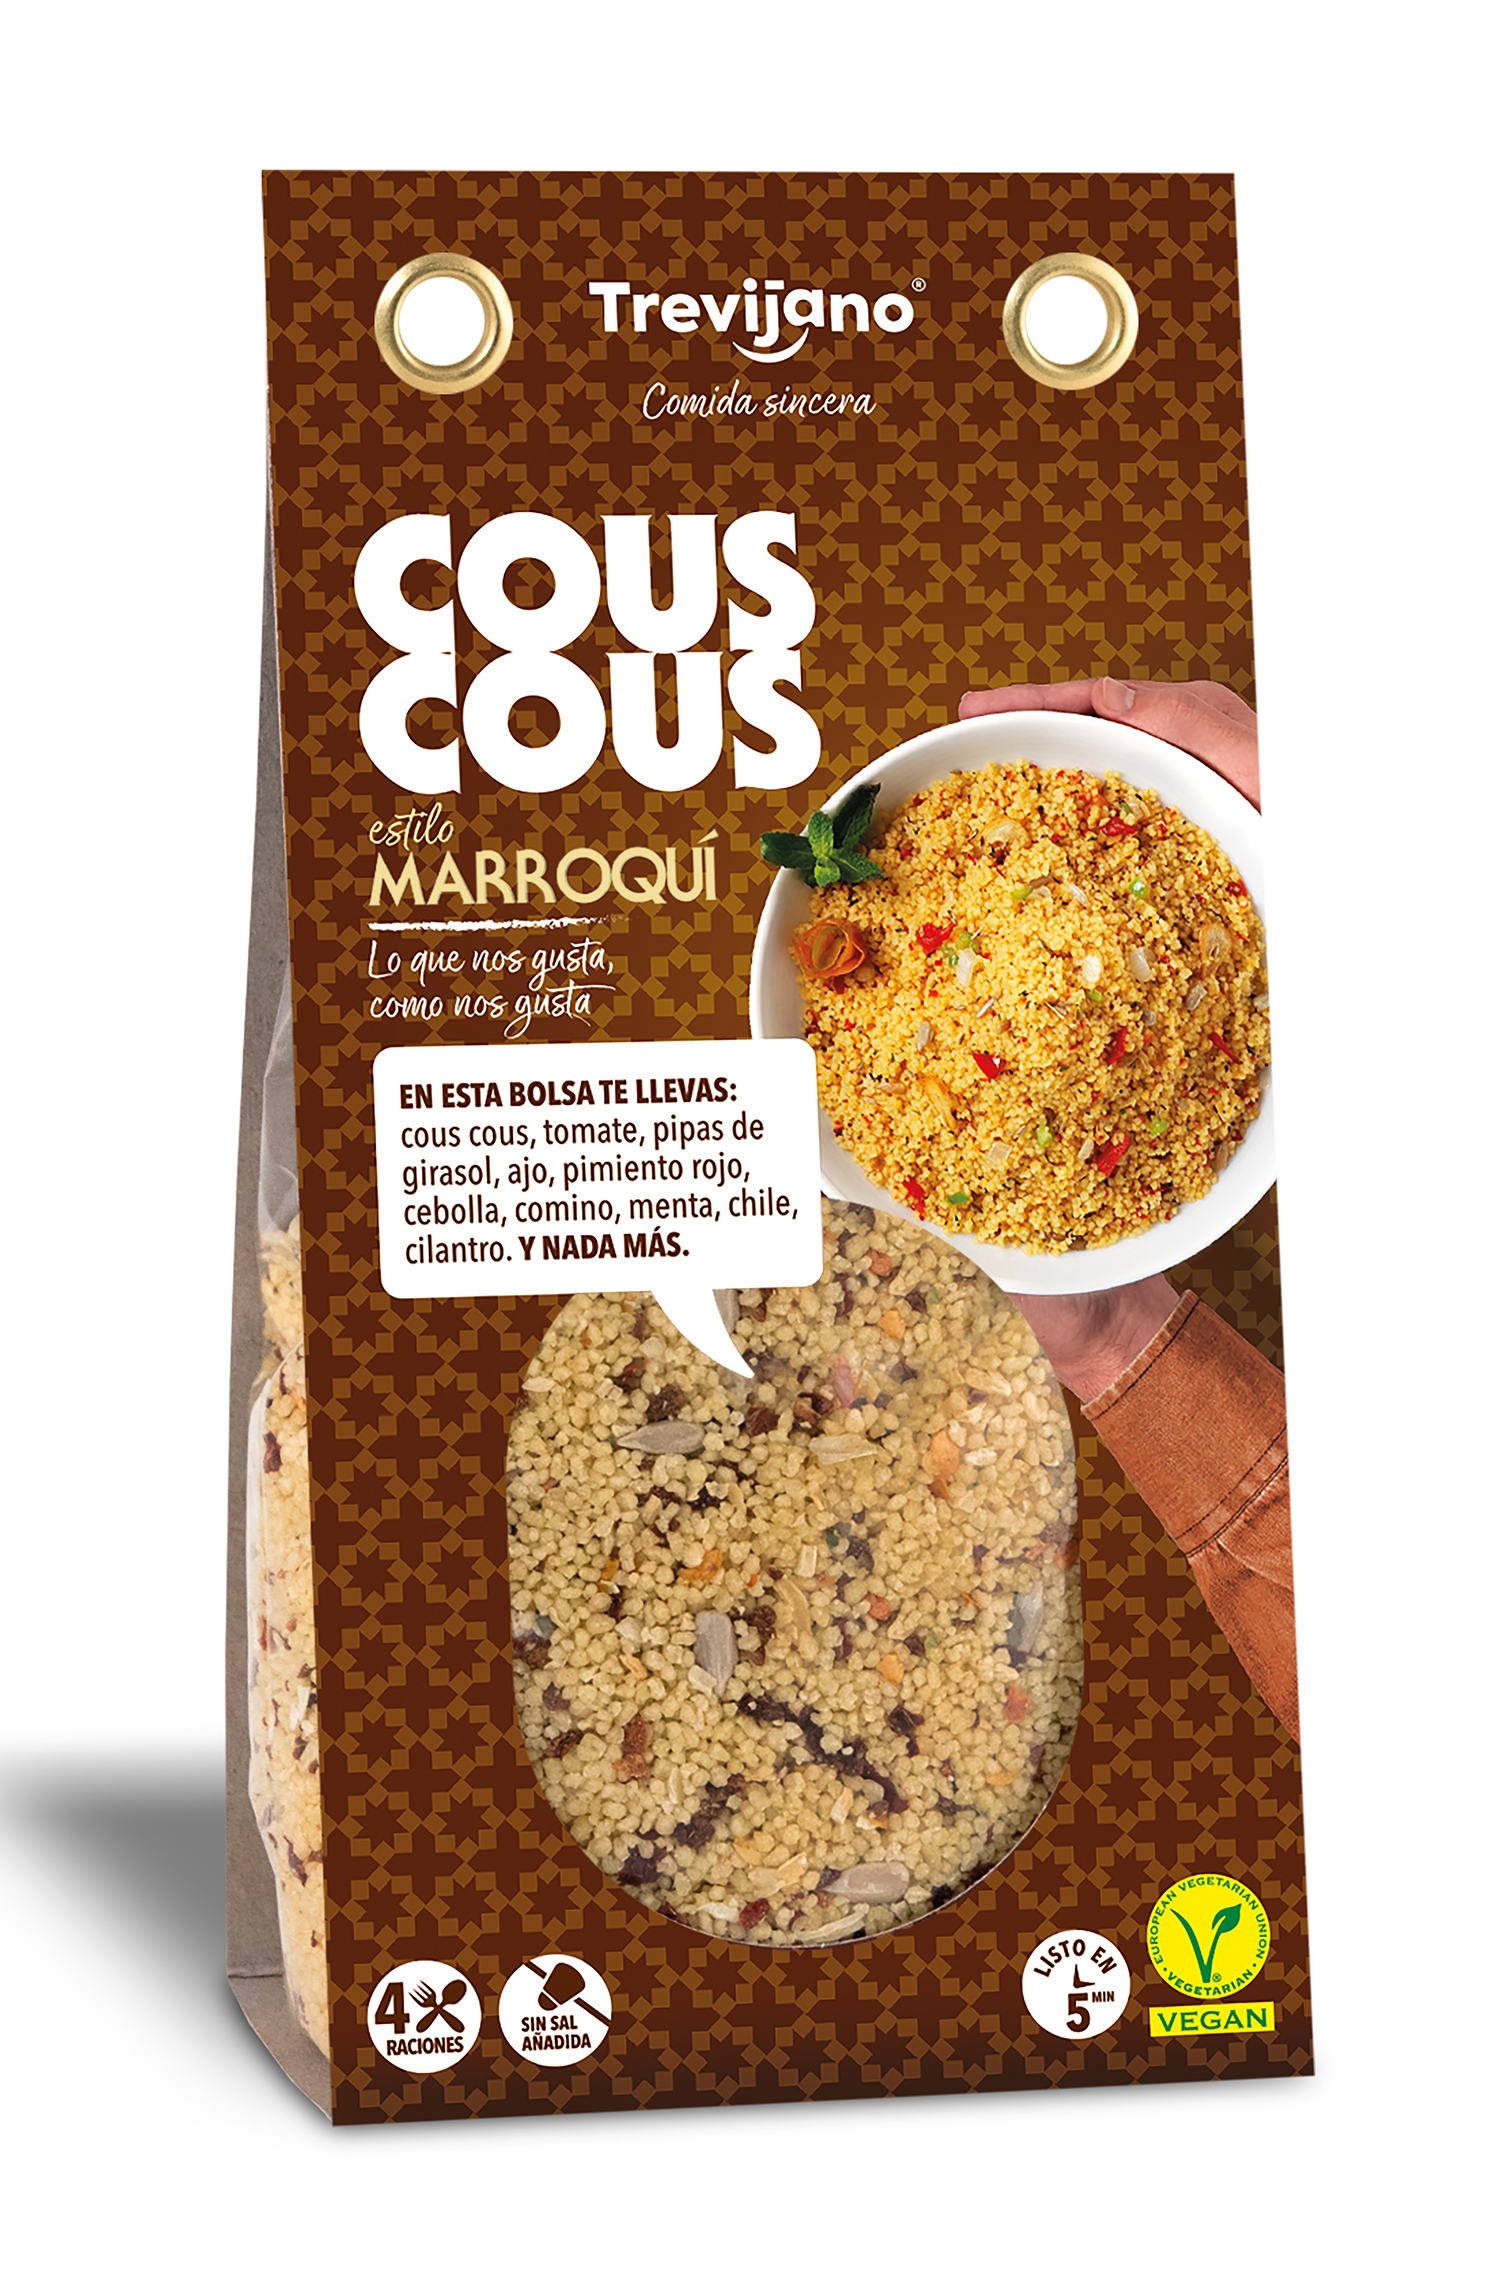 Buy Moroccan couscous Online